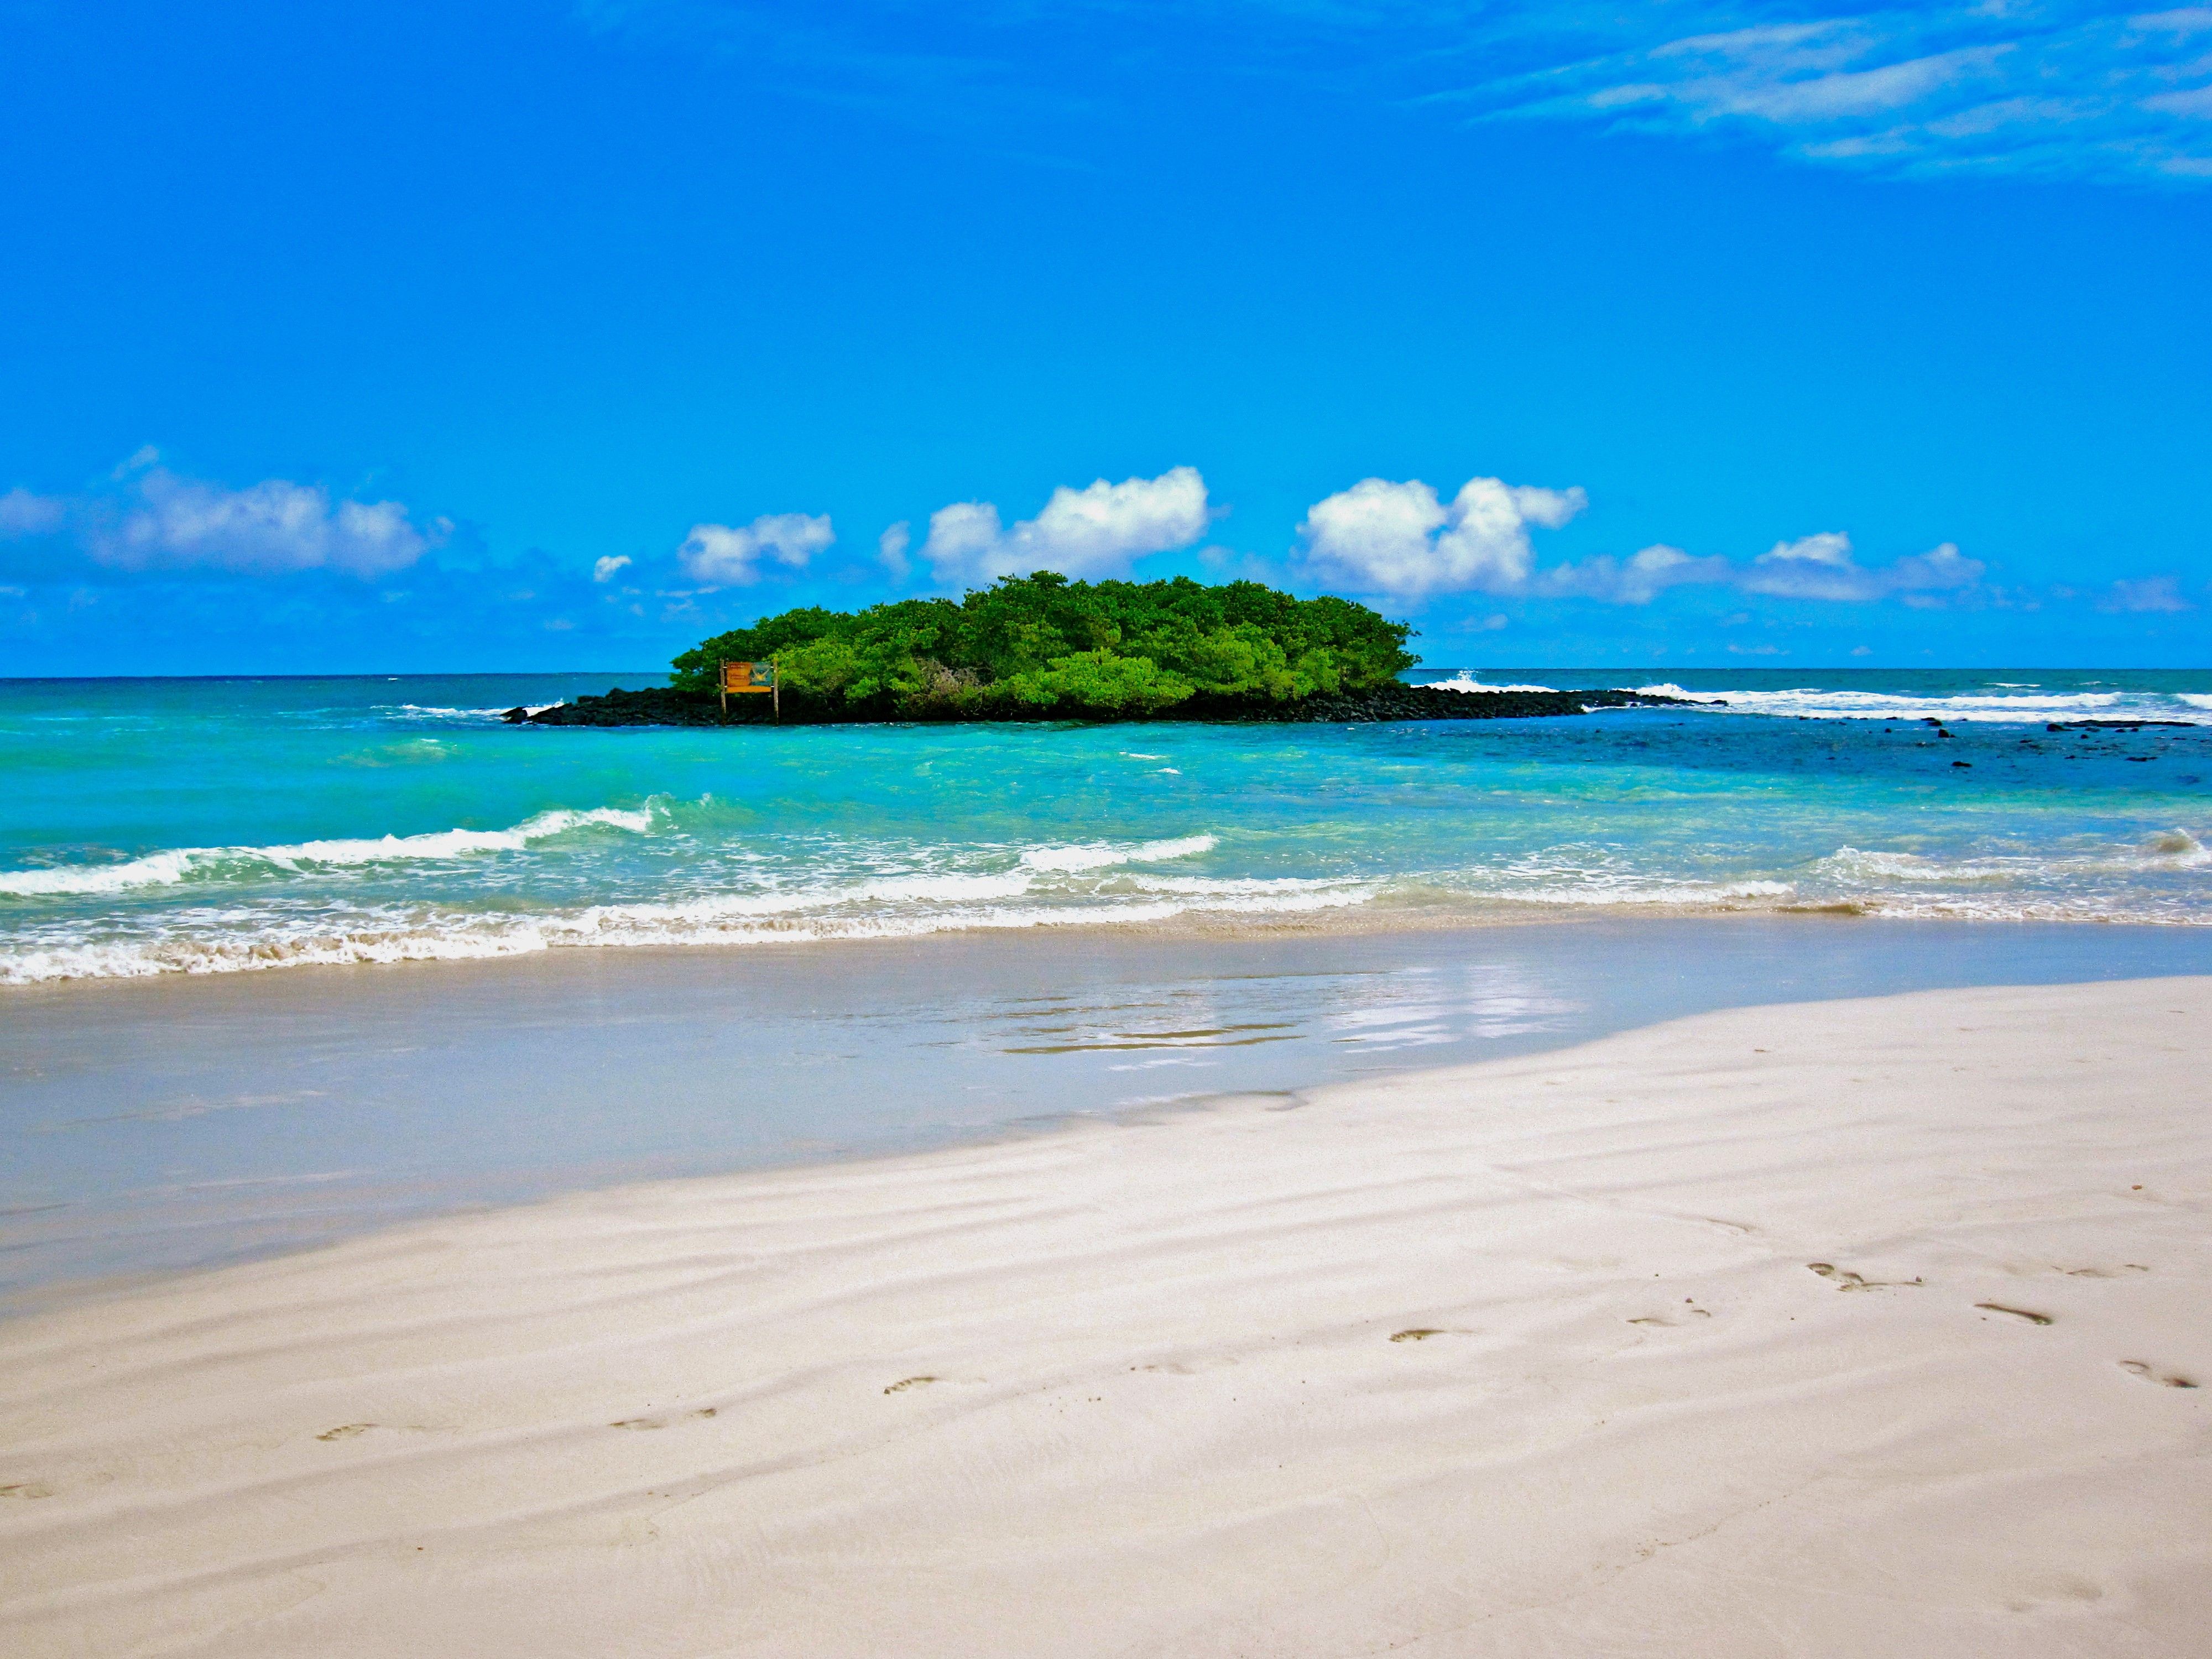 Beach: White Calm Blue Green Private Galapagos Islands Beach Ocean